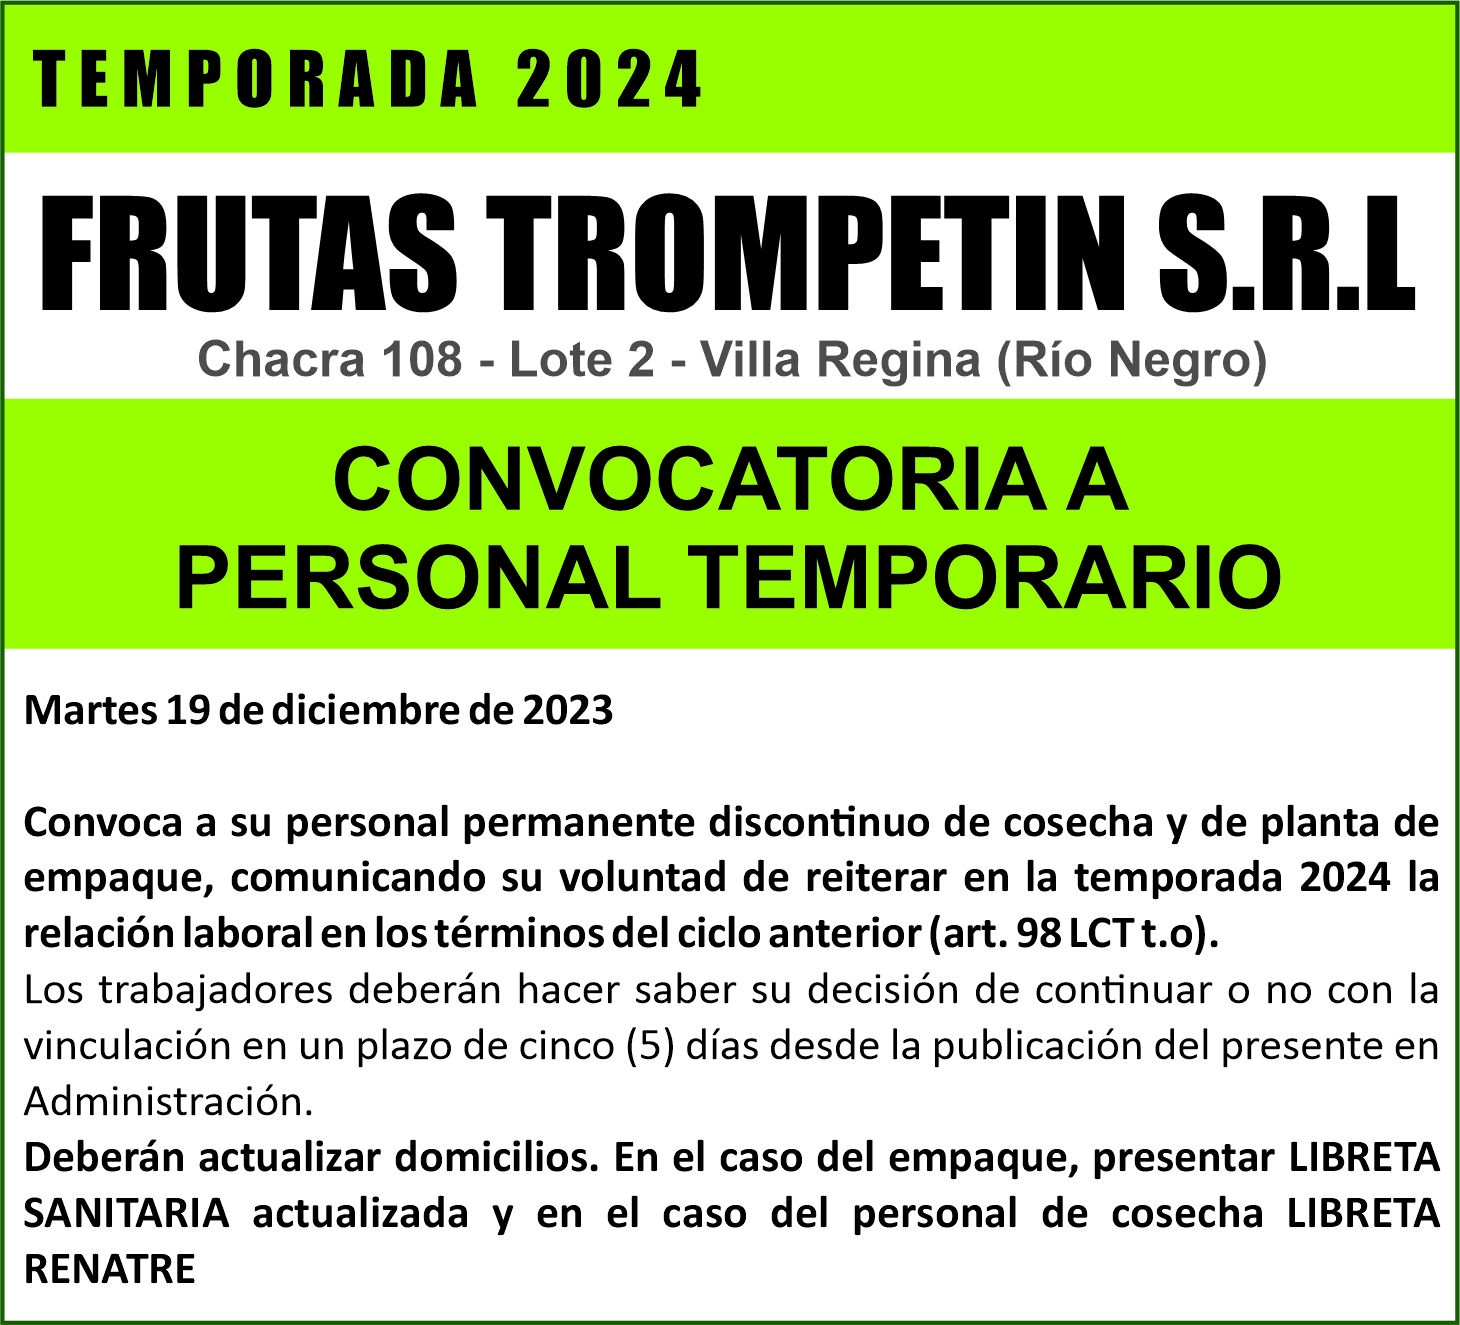 Frutas Trompetín S.R.L convoca a su personal de temporada 2024